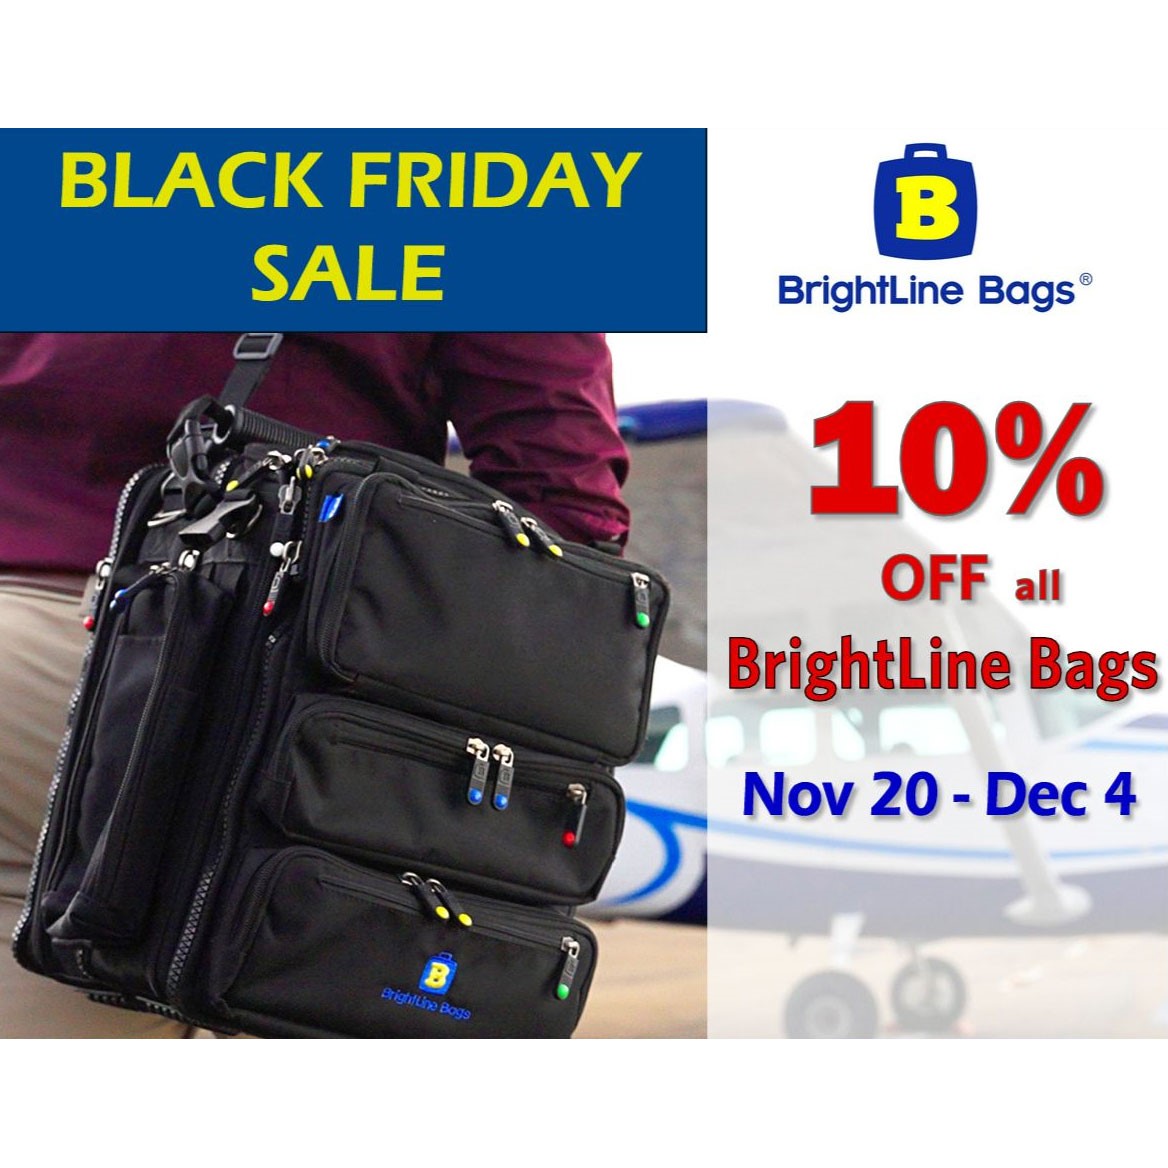 brightline bags sale